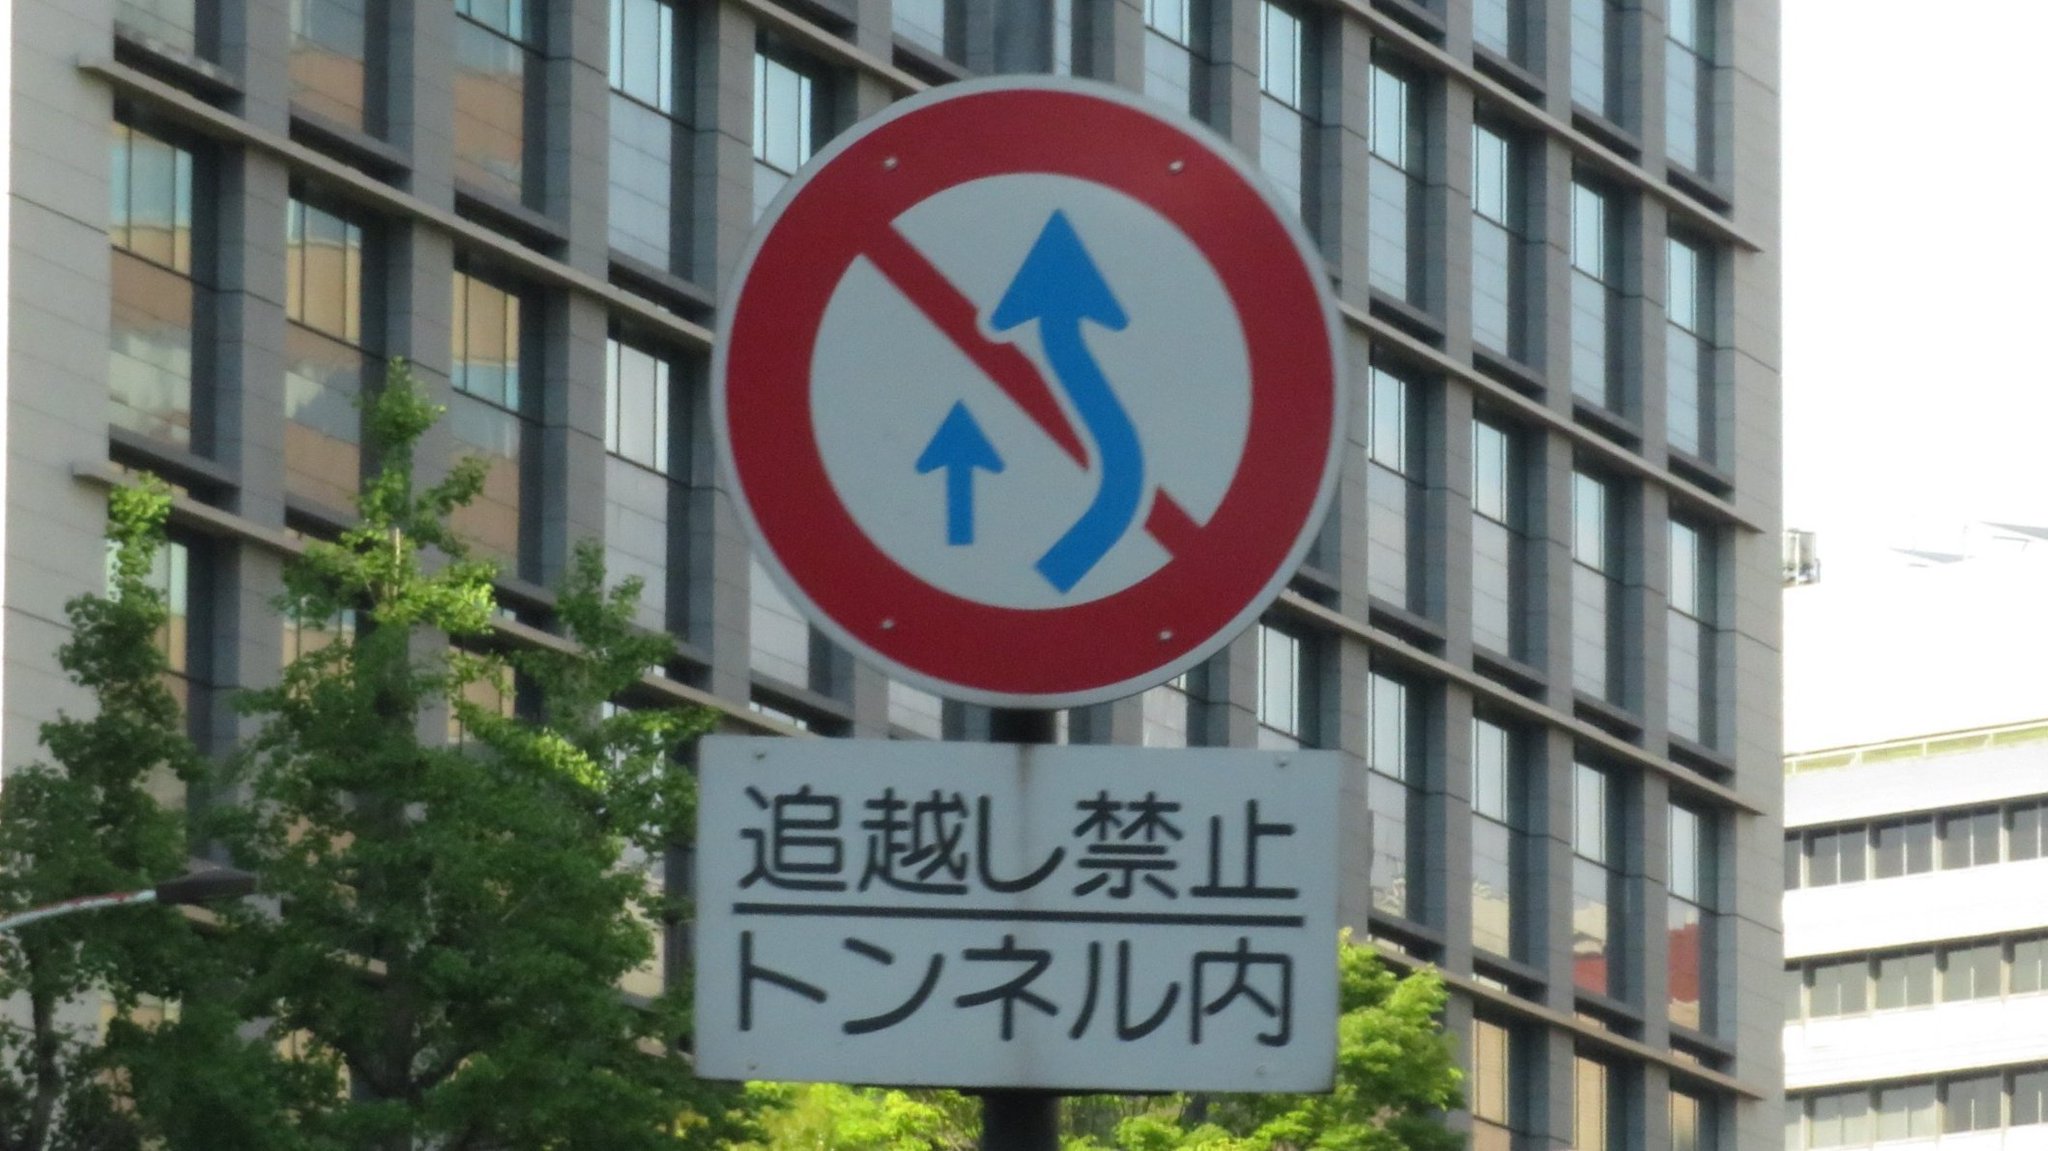 日本の道路標識bot 追越し禁止 314の2 車は 追越しをしてはならない 本標識 追越しのための右側部分はみ出し通行 禁止 と補助標識 追越し禁止 でセットの標識 追越し禁止 では右側にはみ出していなくても他の車を追越してはならない わりと